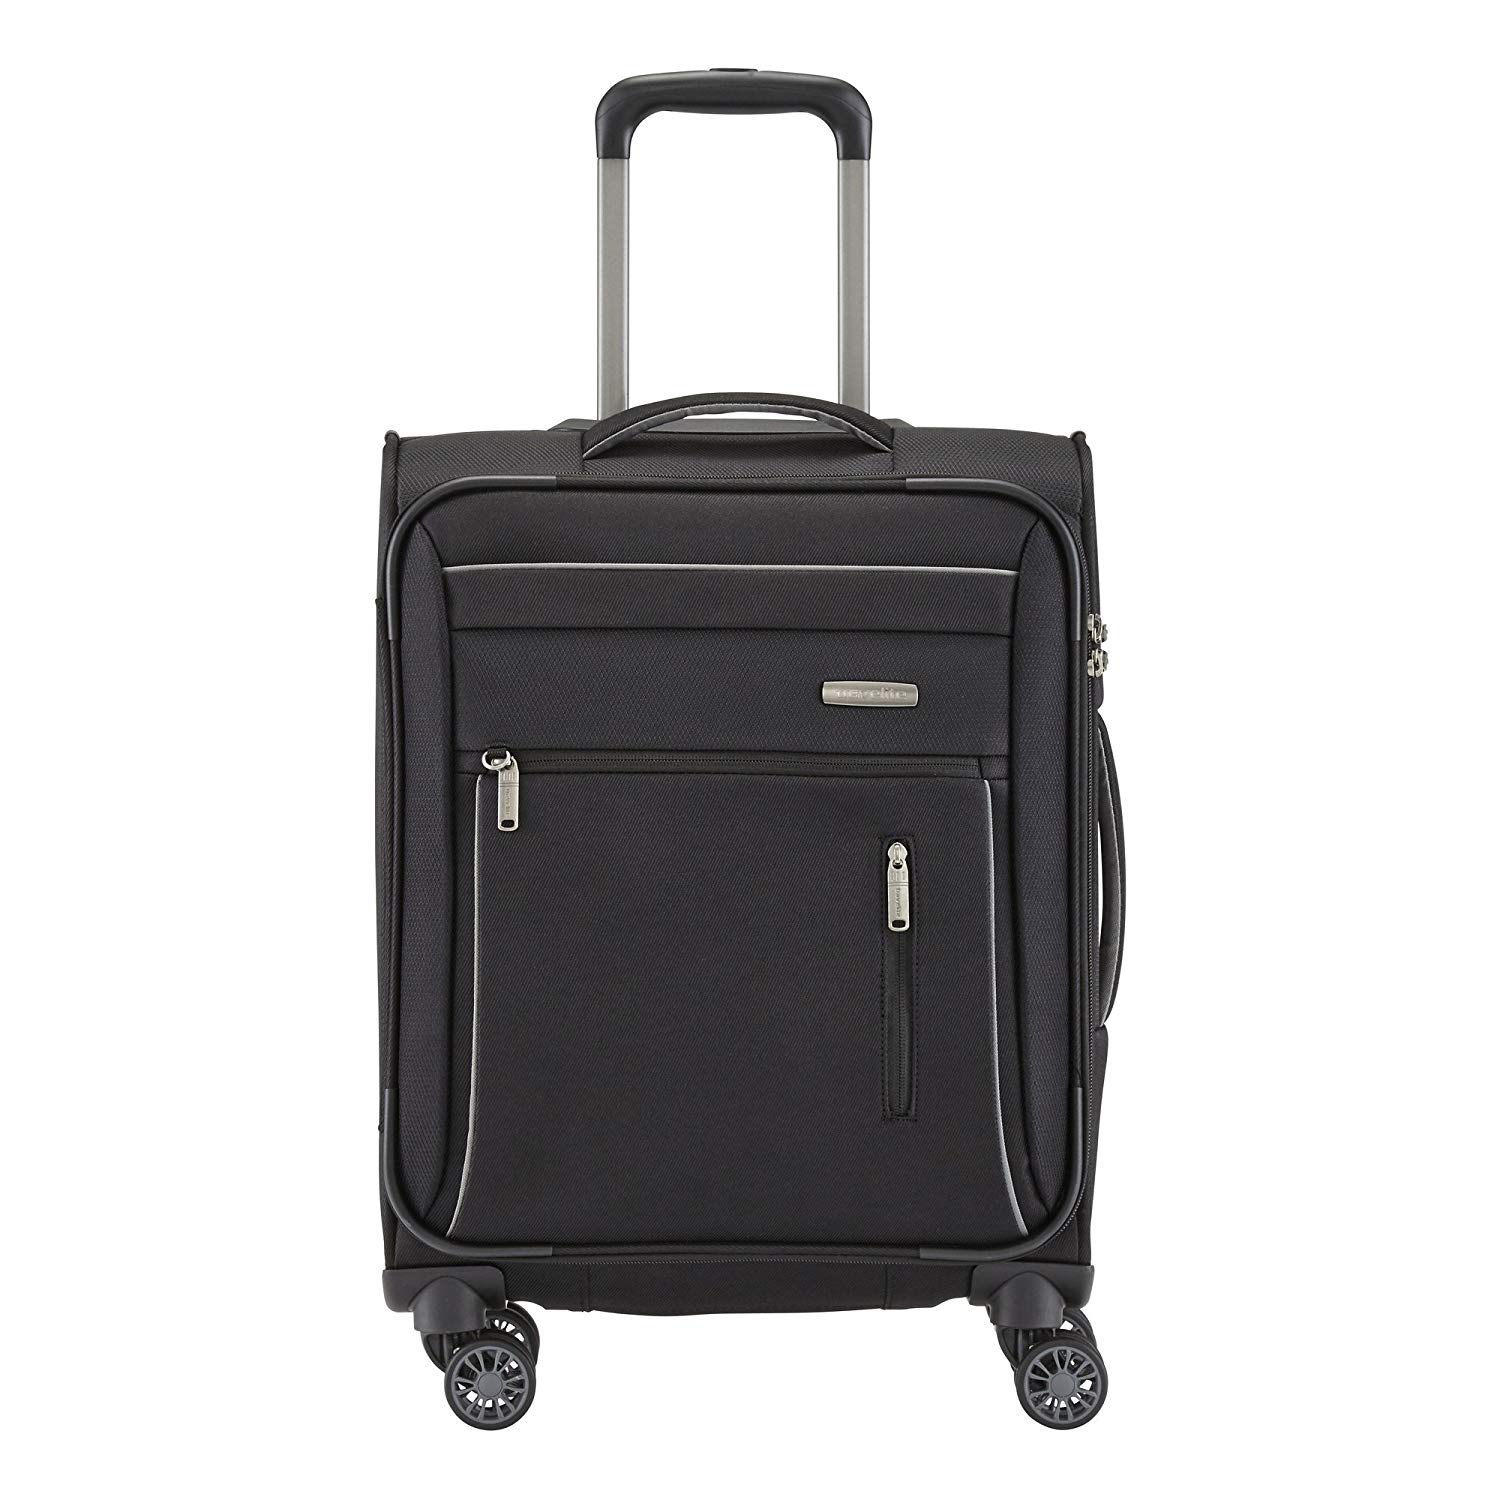 Travelite Capri Gepäckserie Reise- und Bordtaschen, Praktische, elegante 2- und 4-Rad-Trolleys, 3 Farben